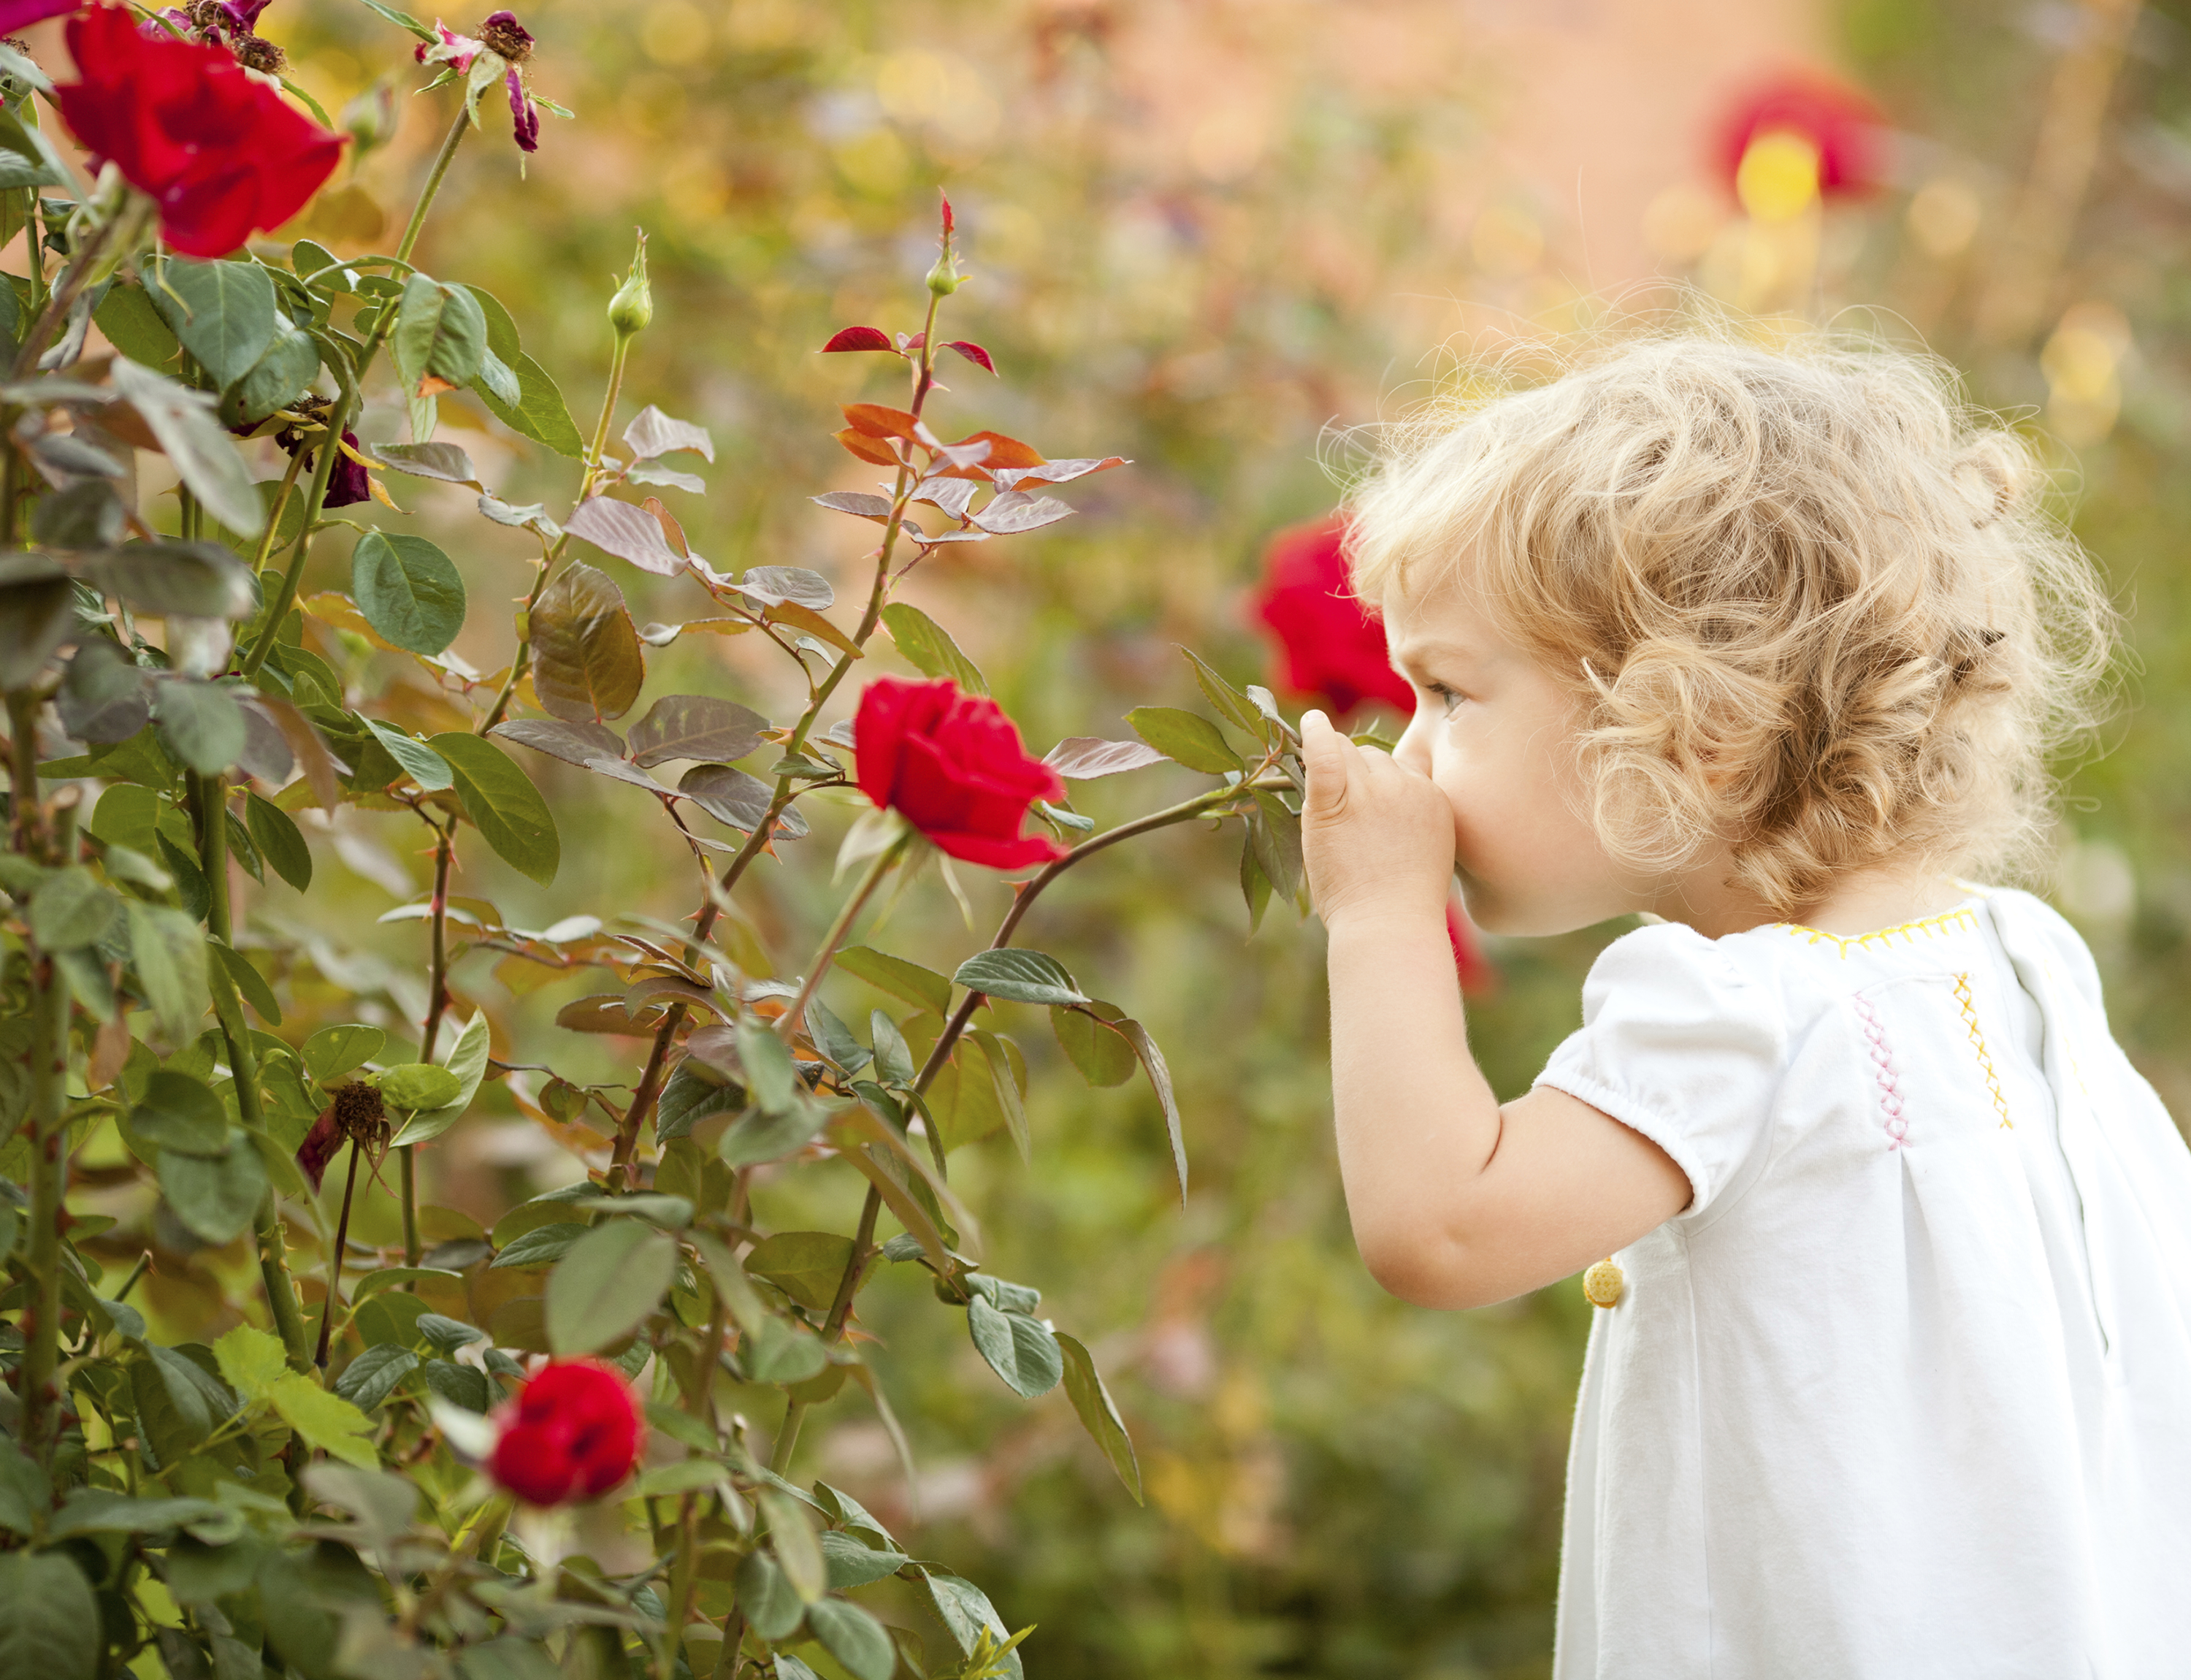 Kind red. Маленькая девочка с розами. Девочка нюхает цветок. Девочка с розами в саду. Люди цветы дети.